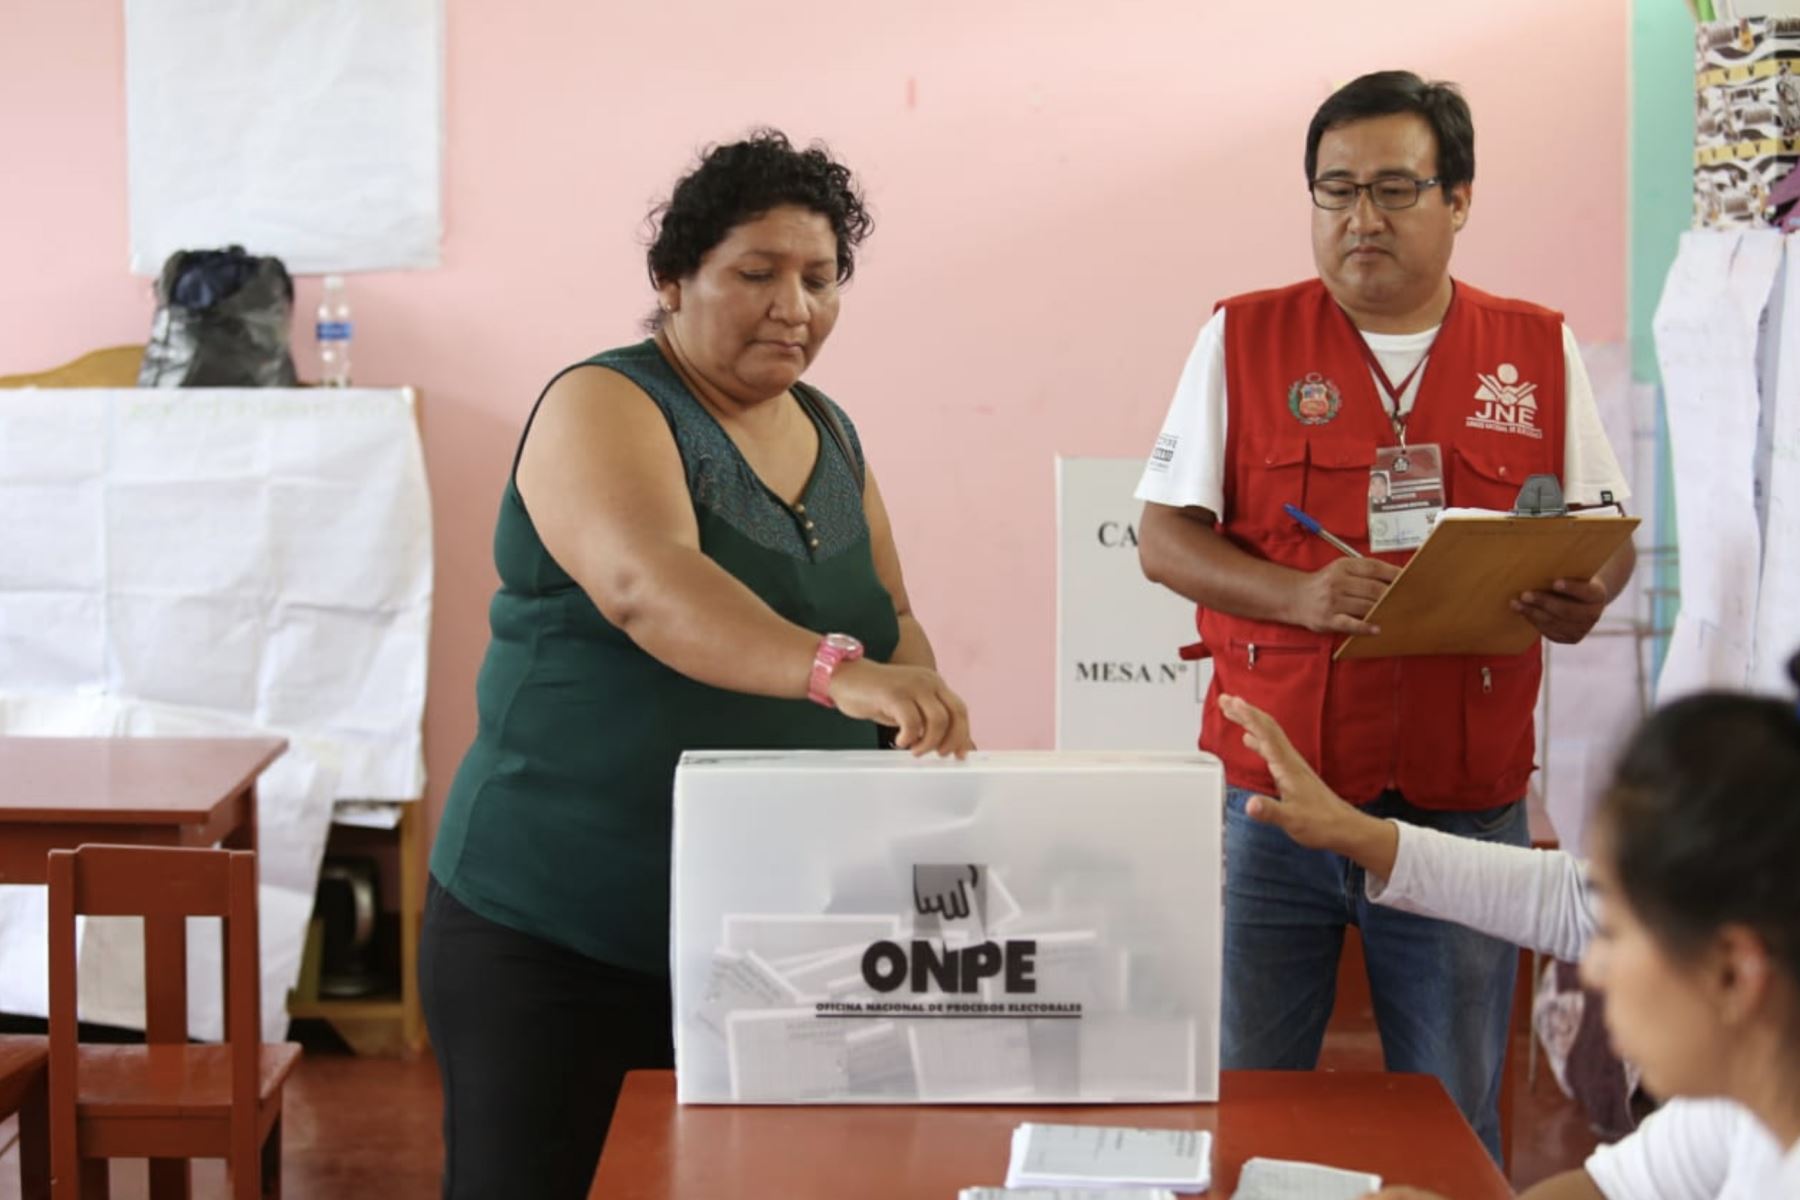 Parlamentswahlen in Peru – Chancen für einen Neuanfang?